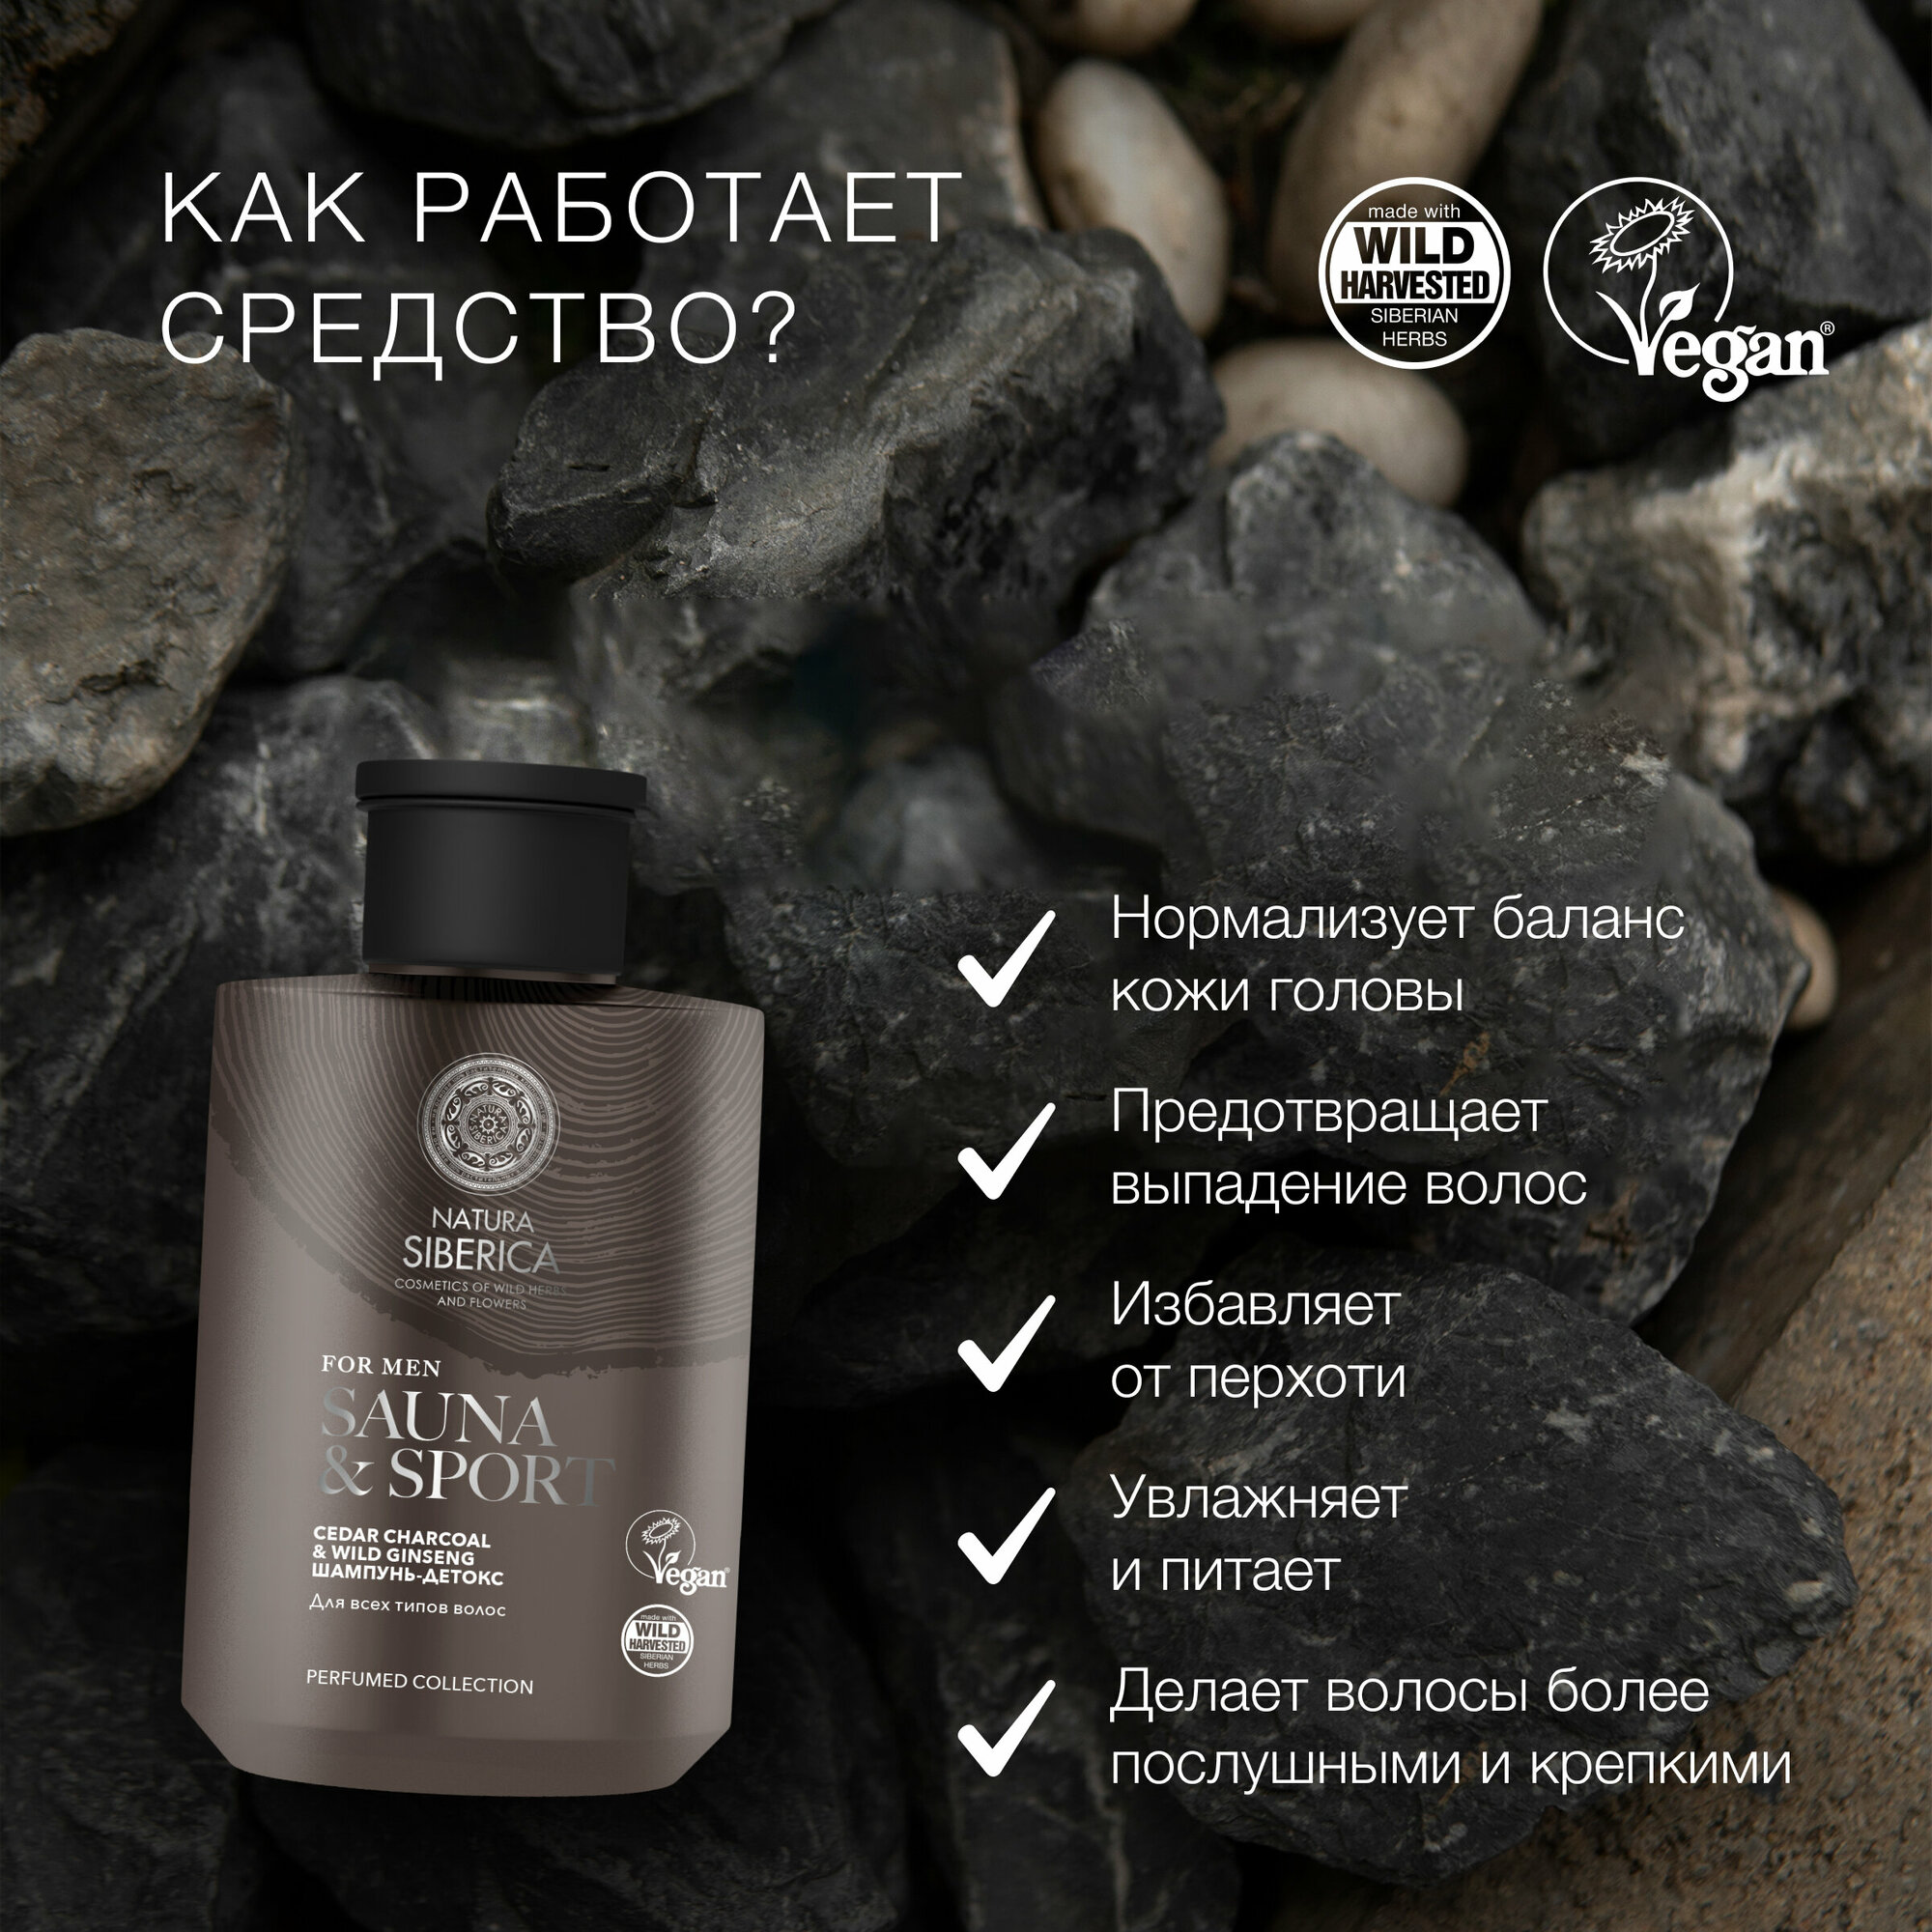 Шампунь-детокс Natura Siberica для всех типов волос Sauna&Sport for Men, 300 мл